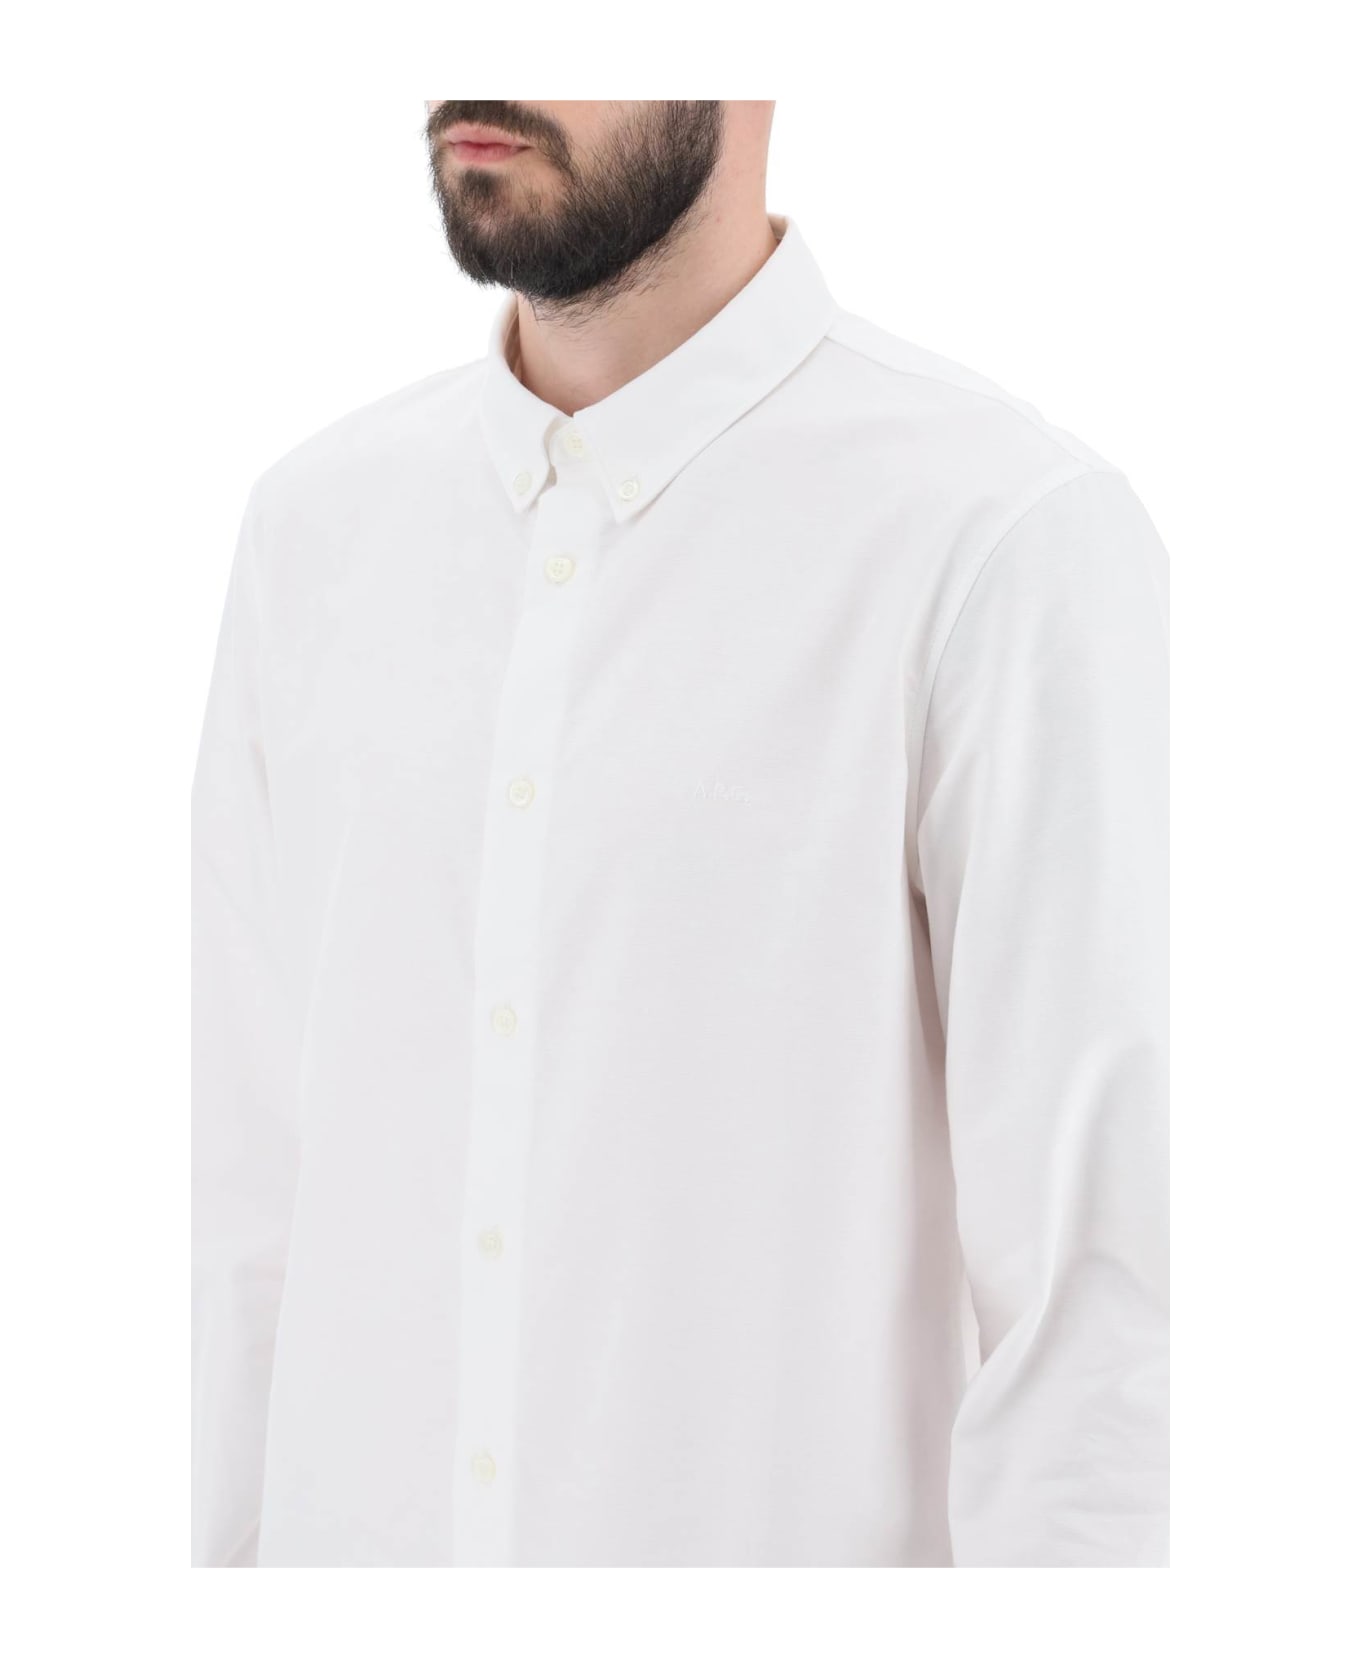 A.P.C. Greg Cotton Shirt - BLANC (White)